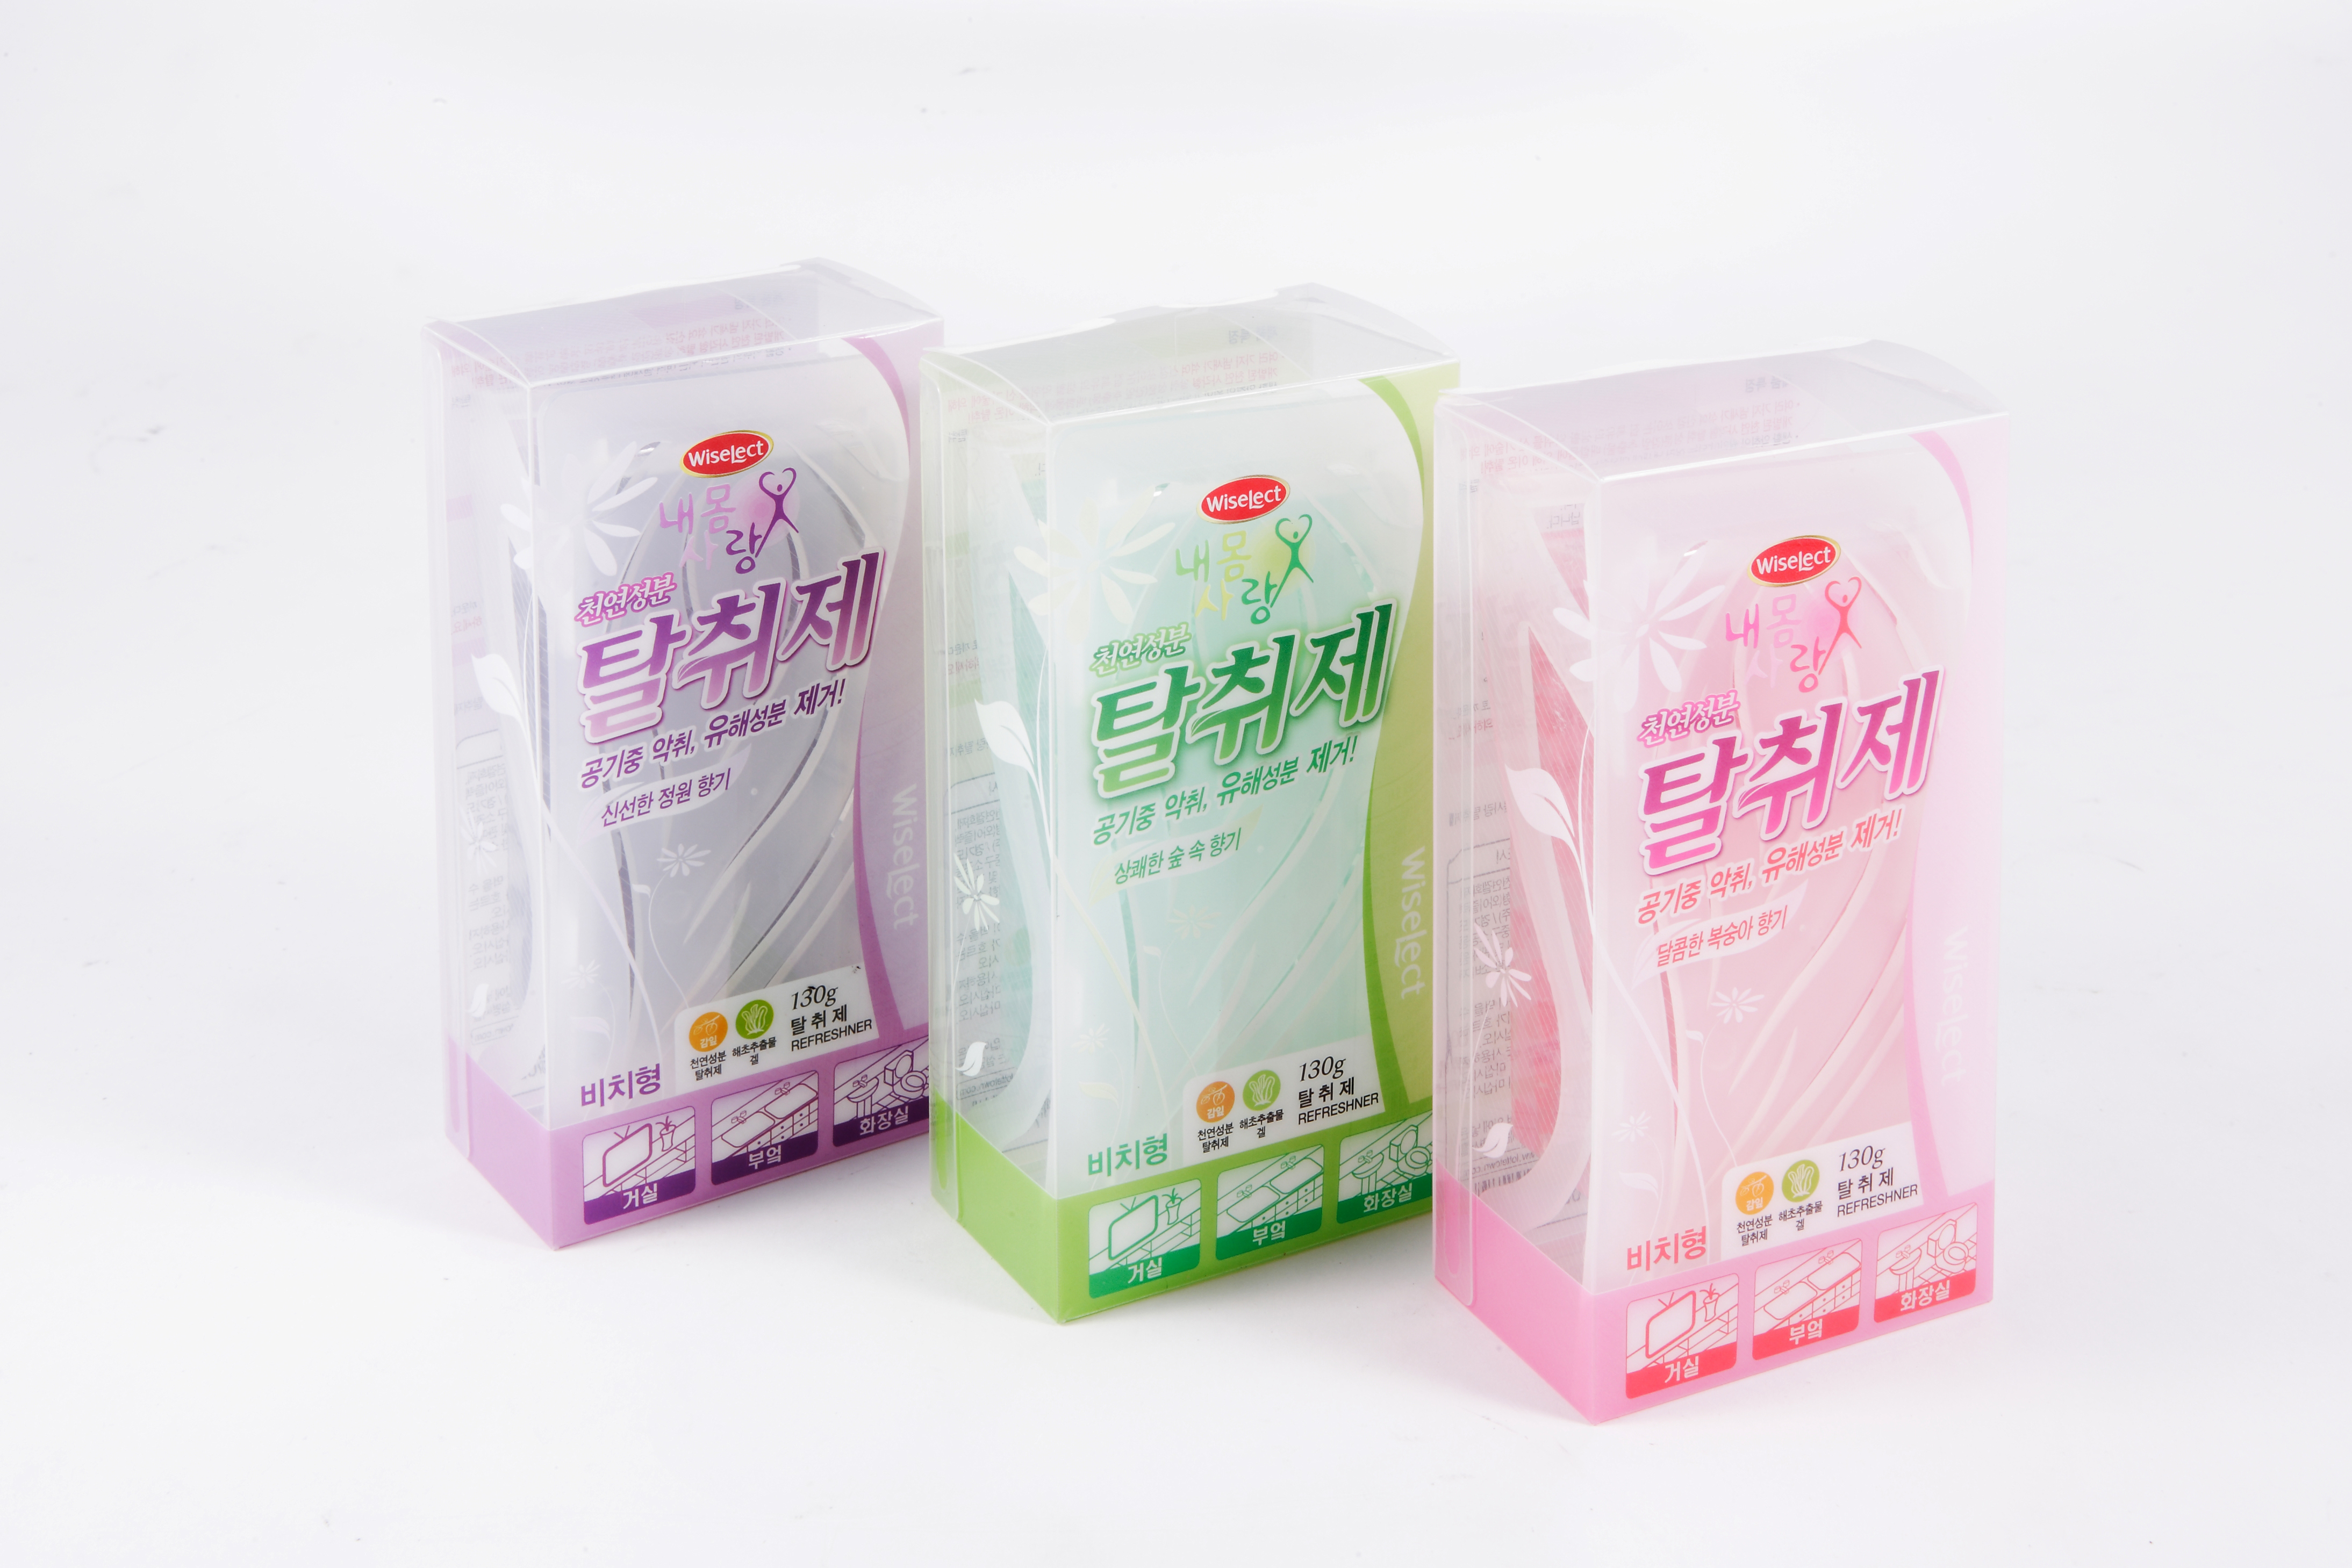 Wiselect Naemomsarang deodorant  Made in Korea